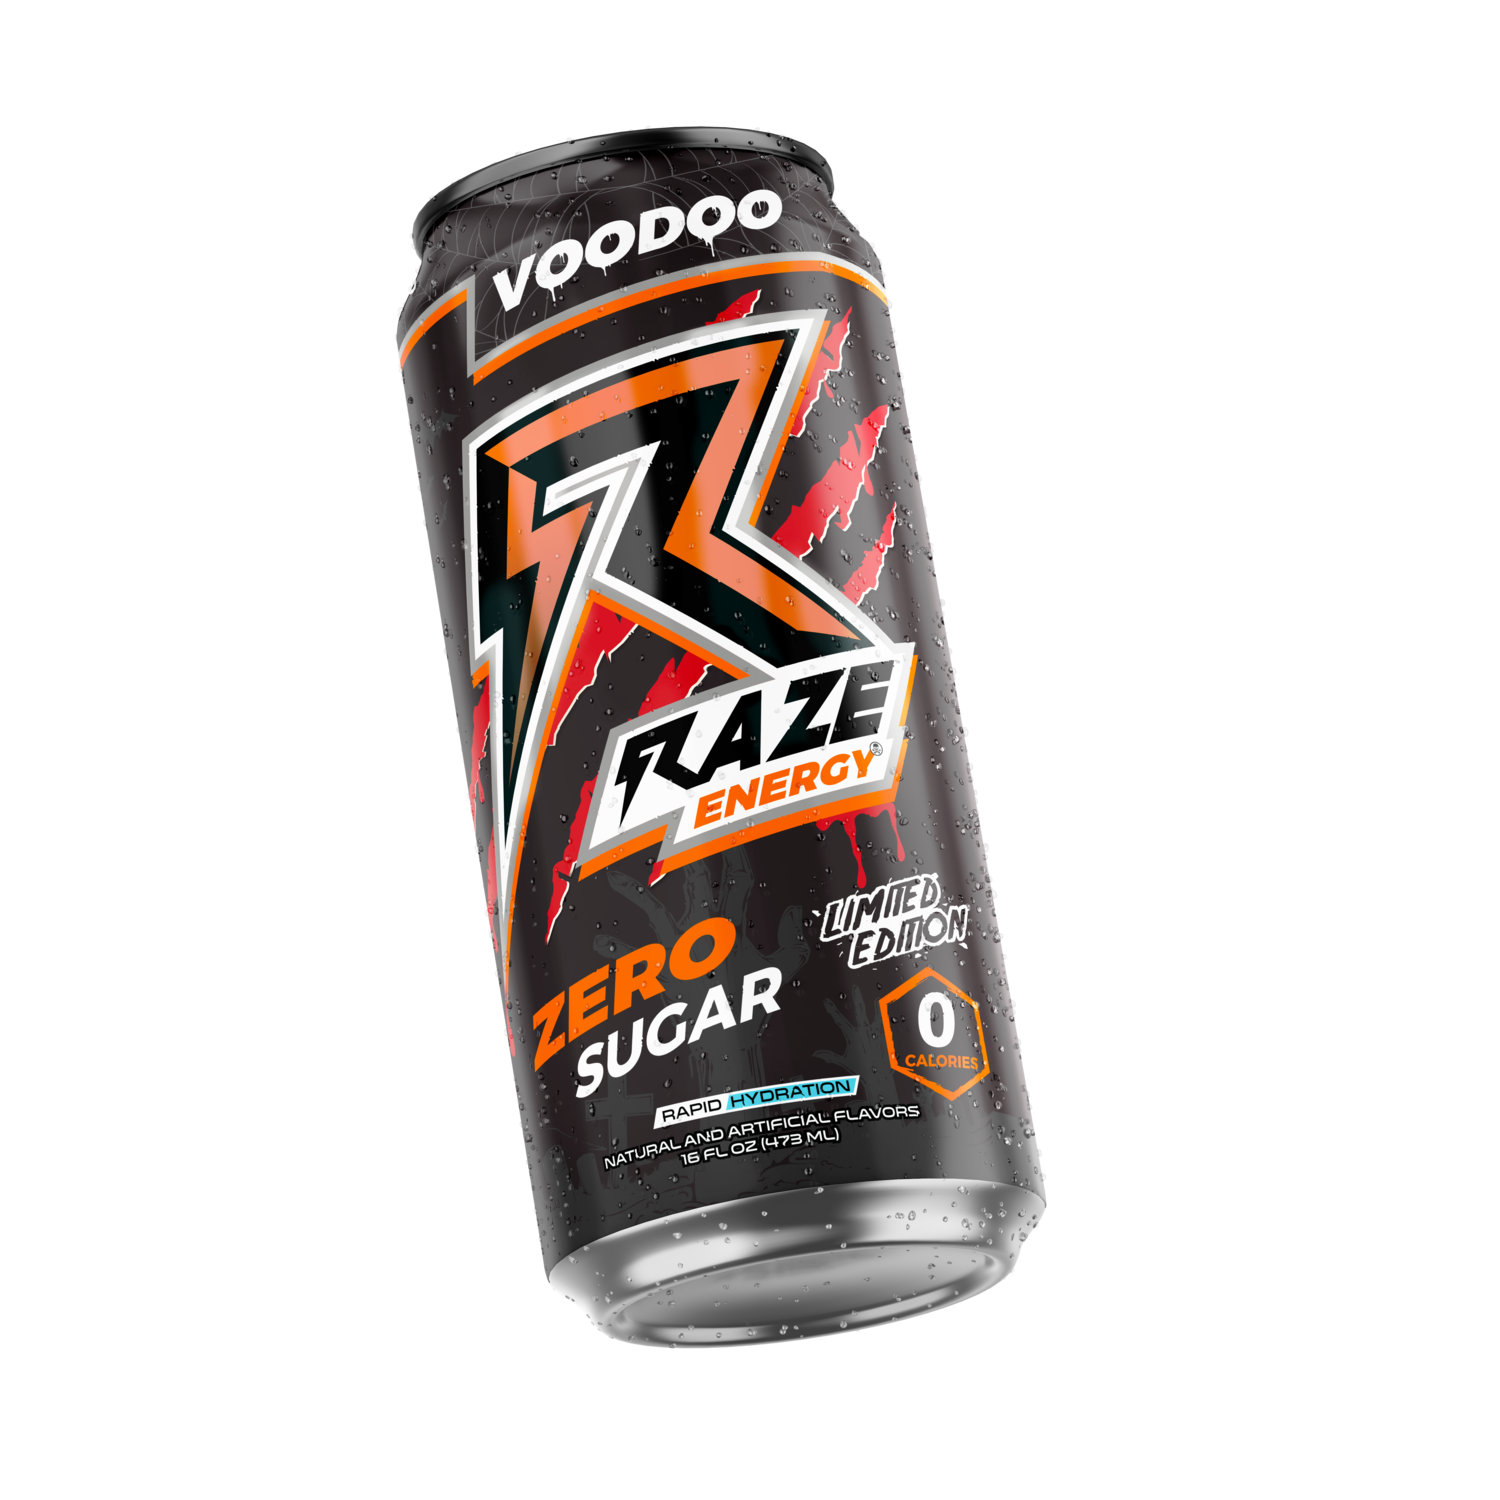 Raze Energy - Voodoo 16oz. (One Can)